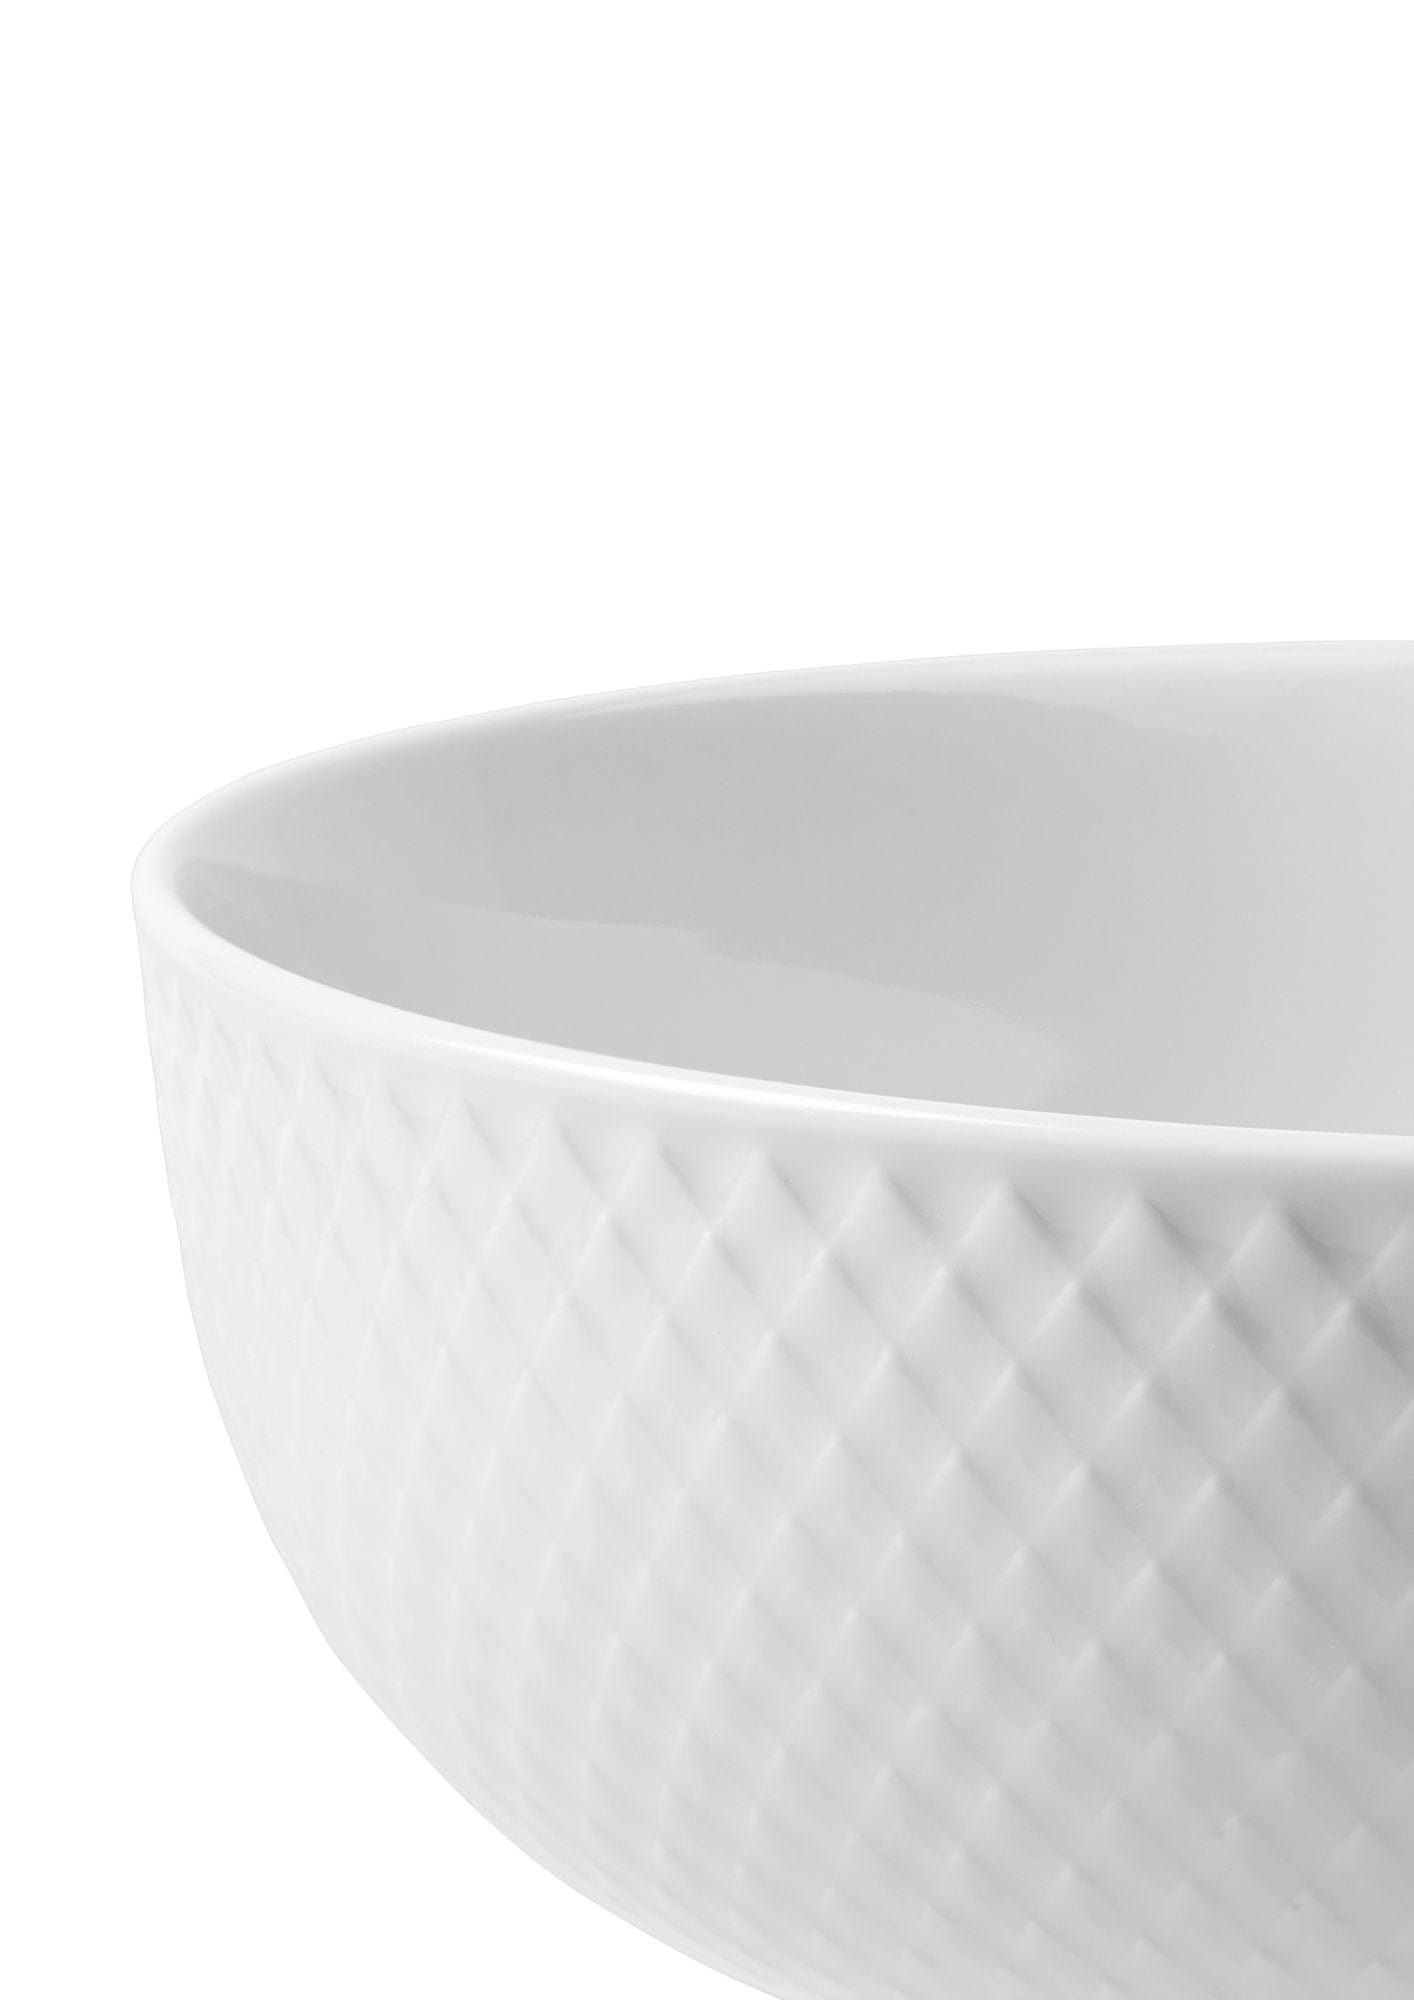 Lyngby Porcelæn Rhombe Bowl Ø15,5 cm, biały